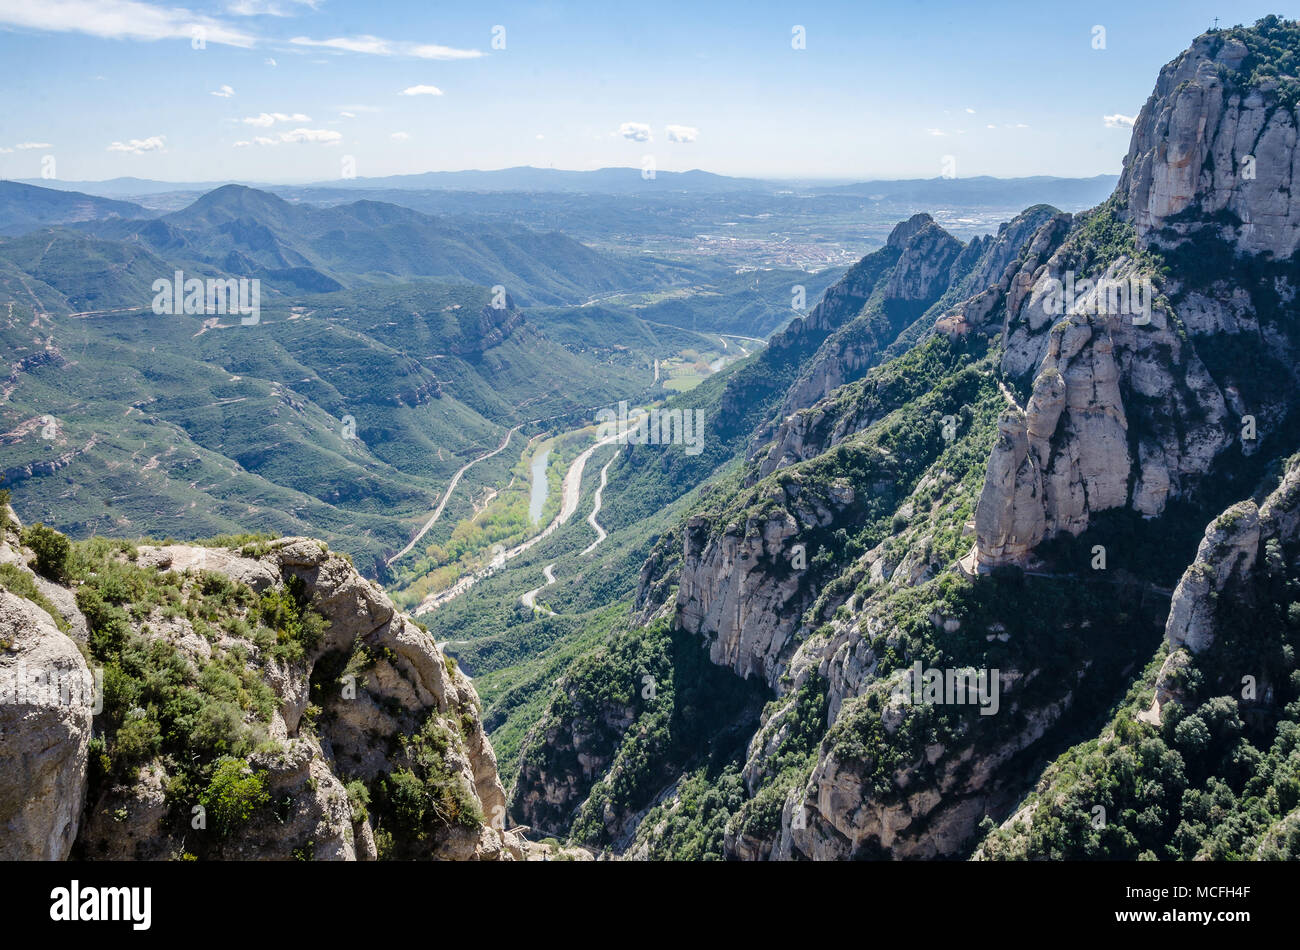 Una vista della campagna circostante come si vede dall'abbazia benedettina di Santa Maria de Montserrat in Catalogna, Spagna. Foto Stock